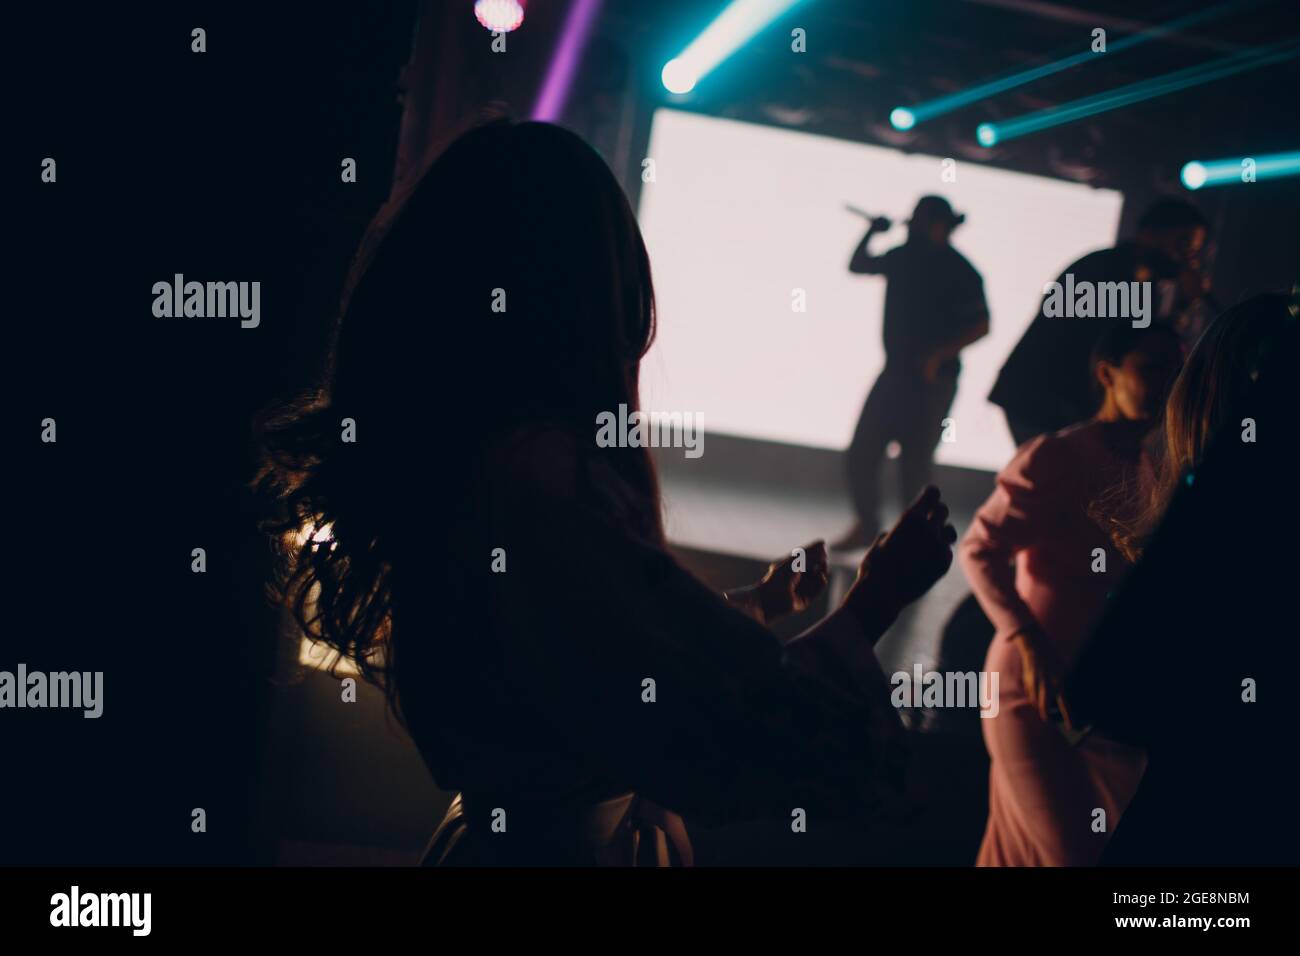 La silhouette dell'uomo del cantante al buio canta in un microfono durante un concerto. Foto Stock